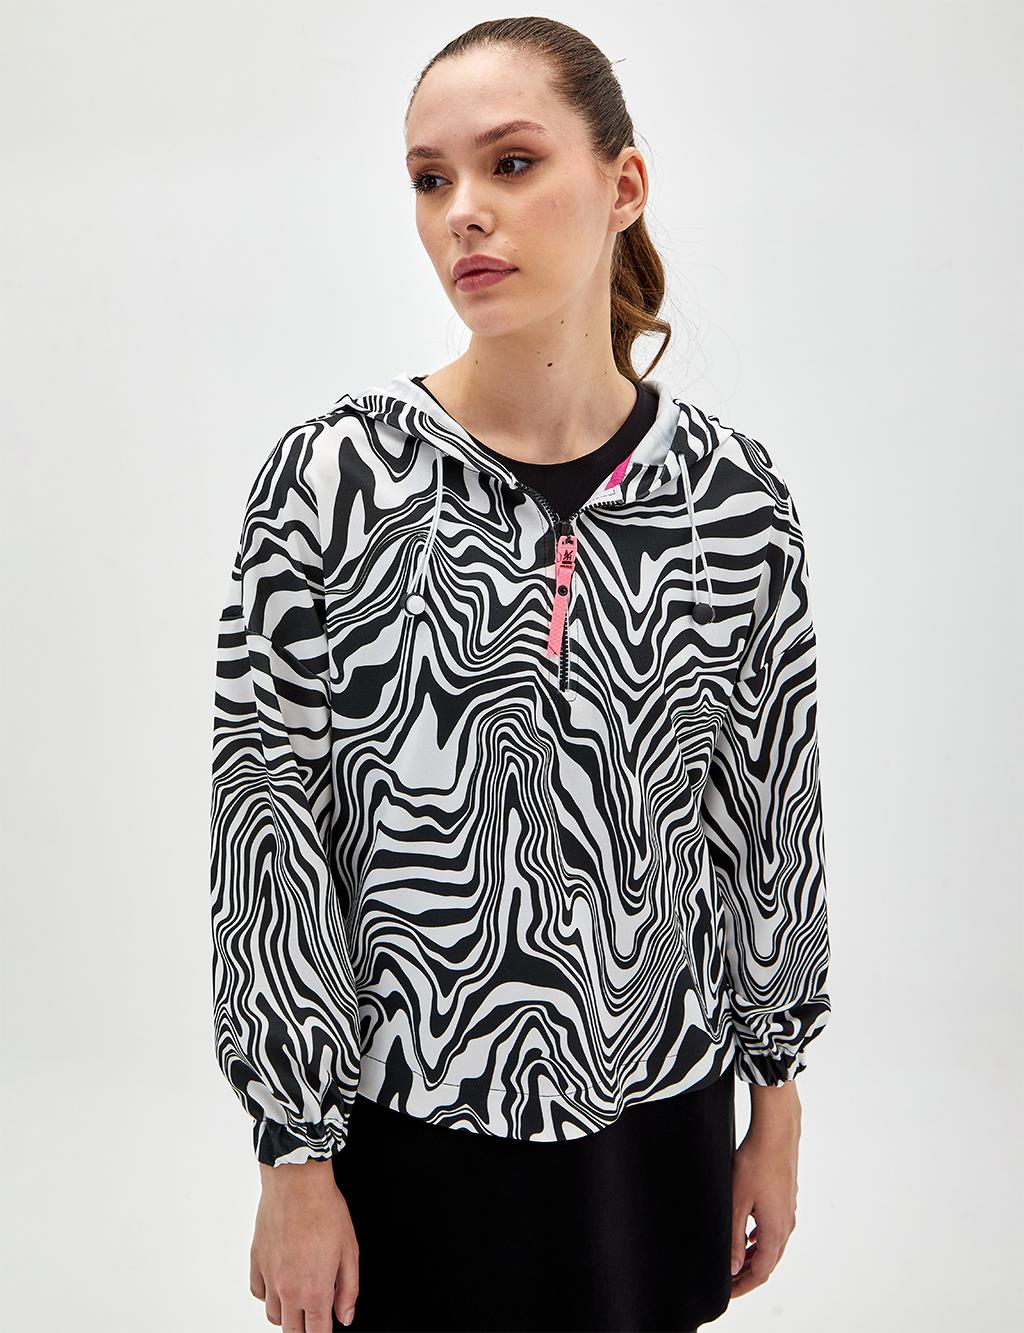 Zebra Patterned Sweatshirt Black